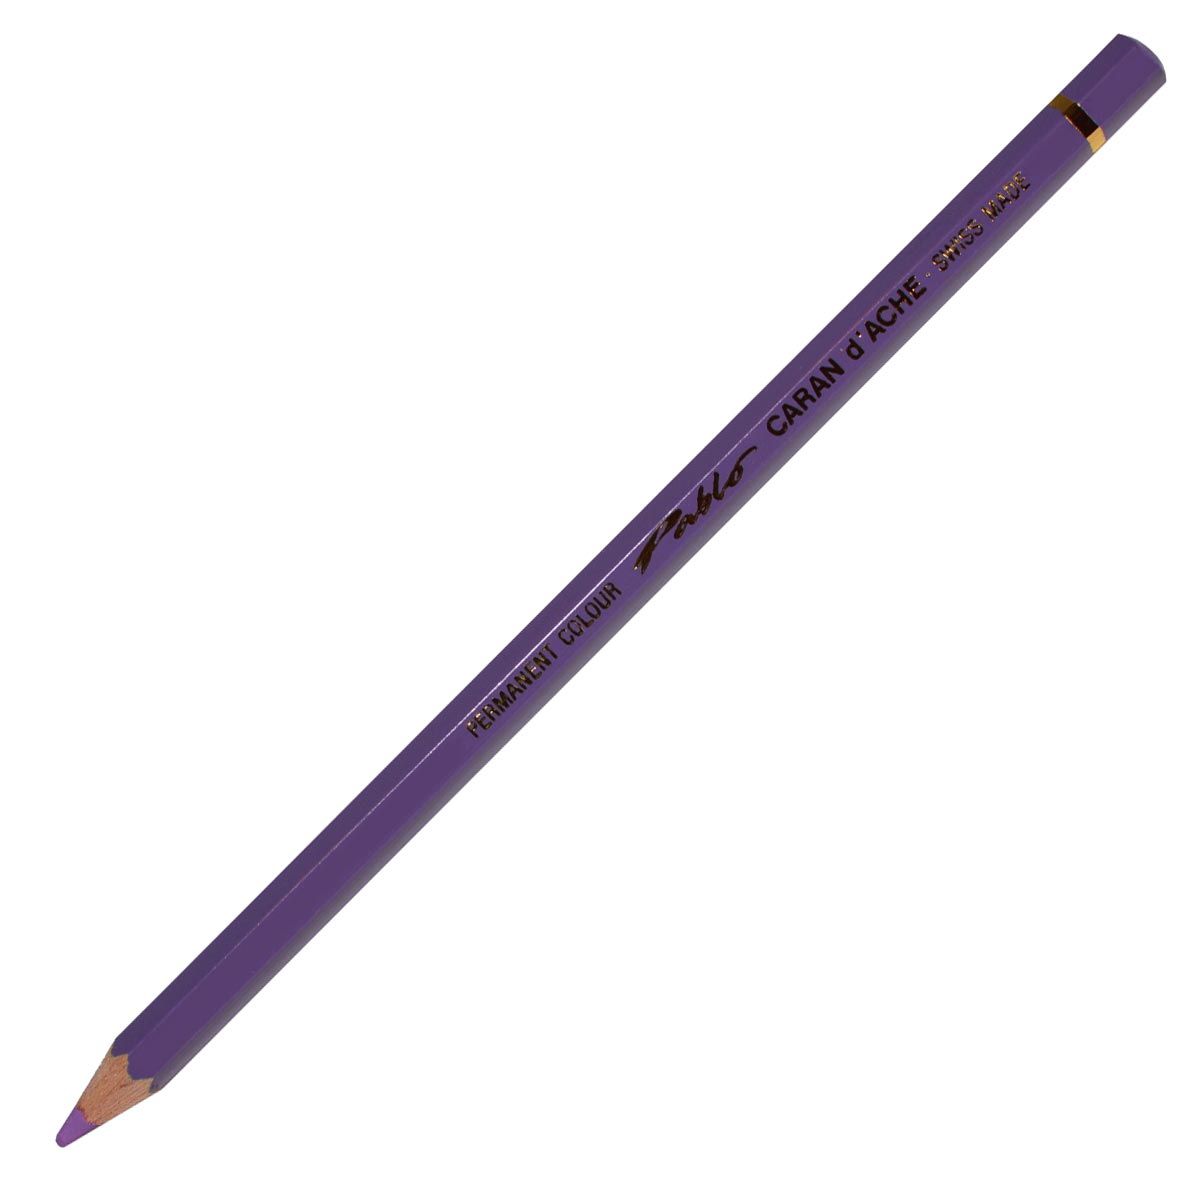 Caran d’Ache Pablo Coloured Pencil - Mauve 111